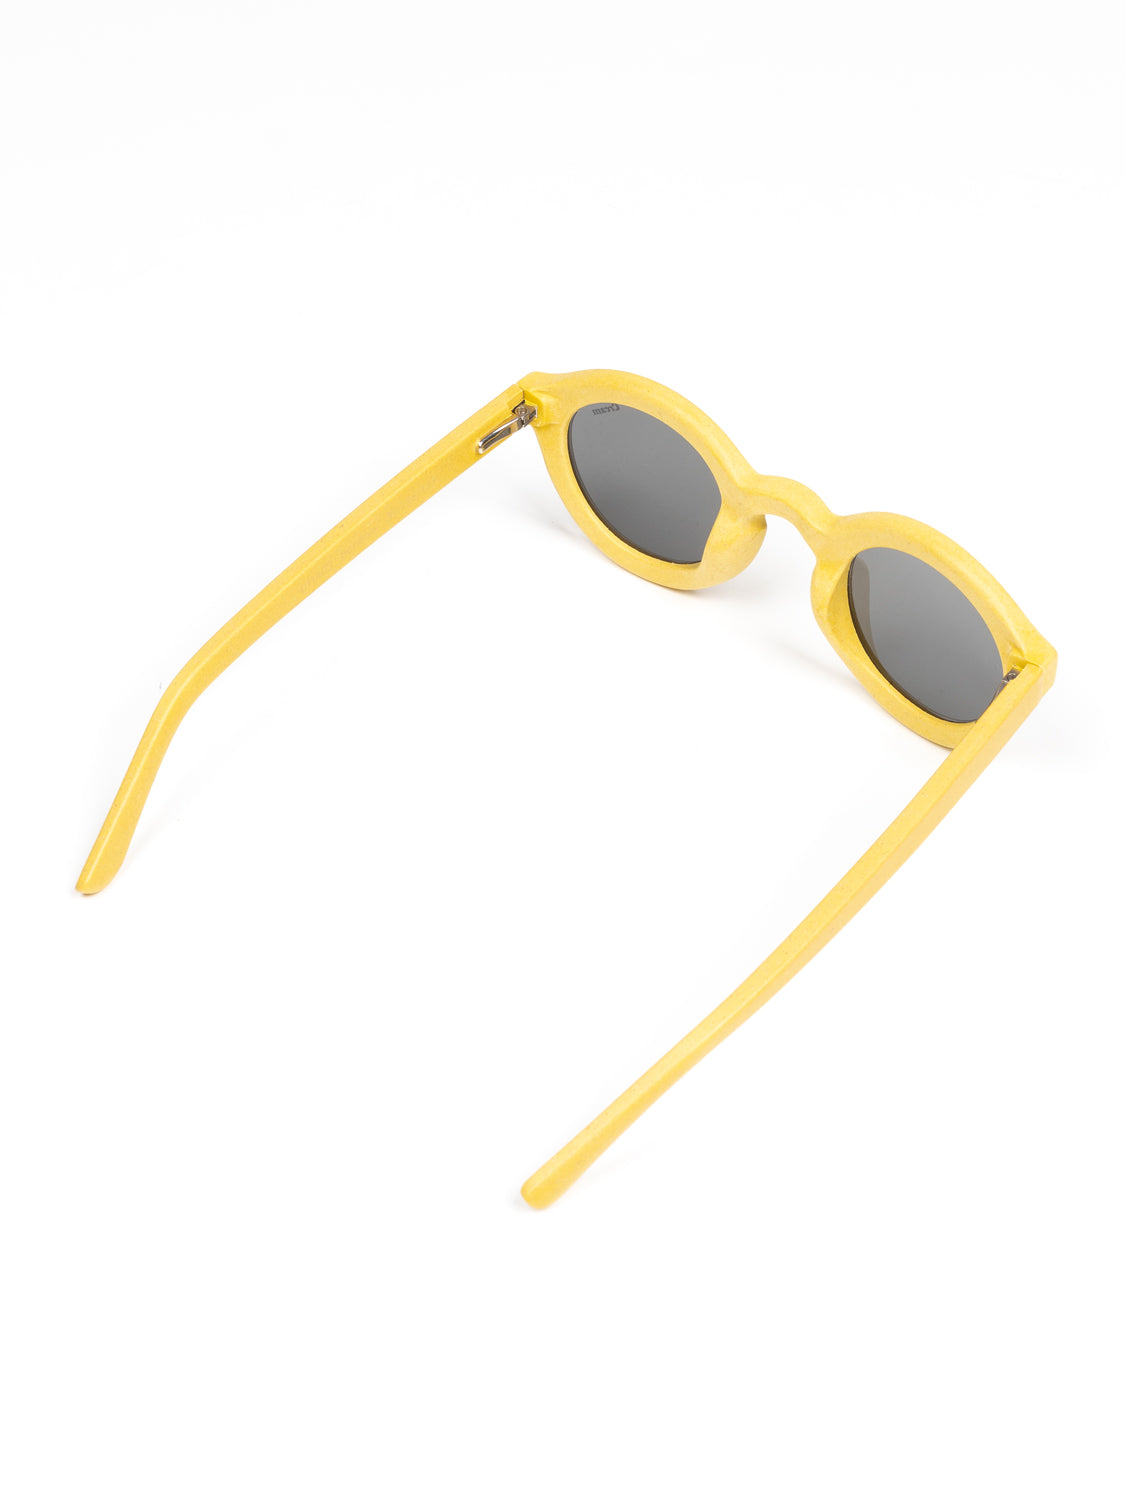 Sonnenbrille Gelb